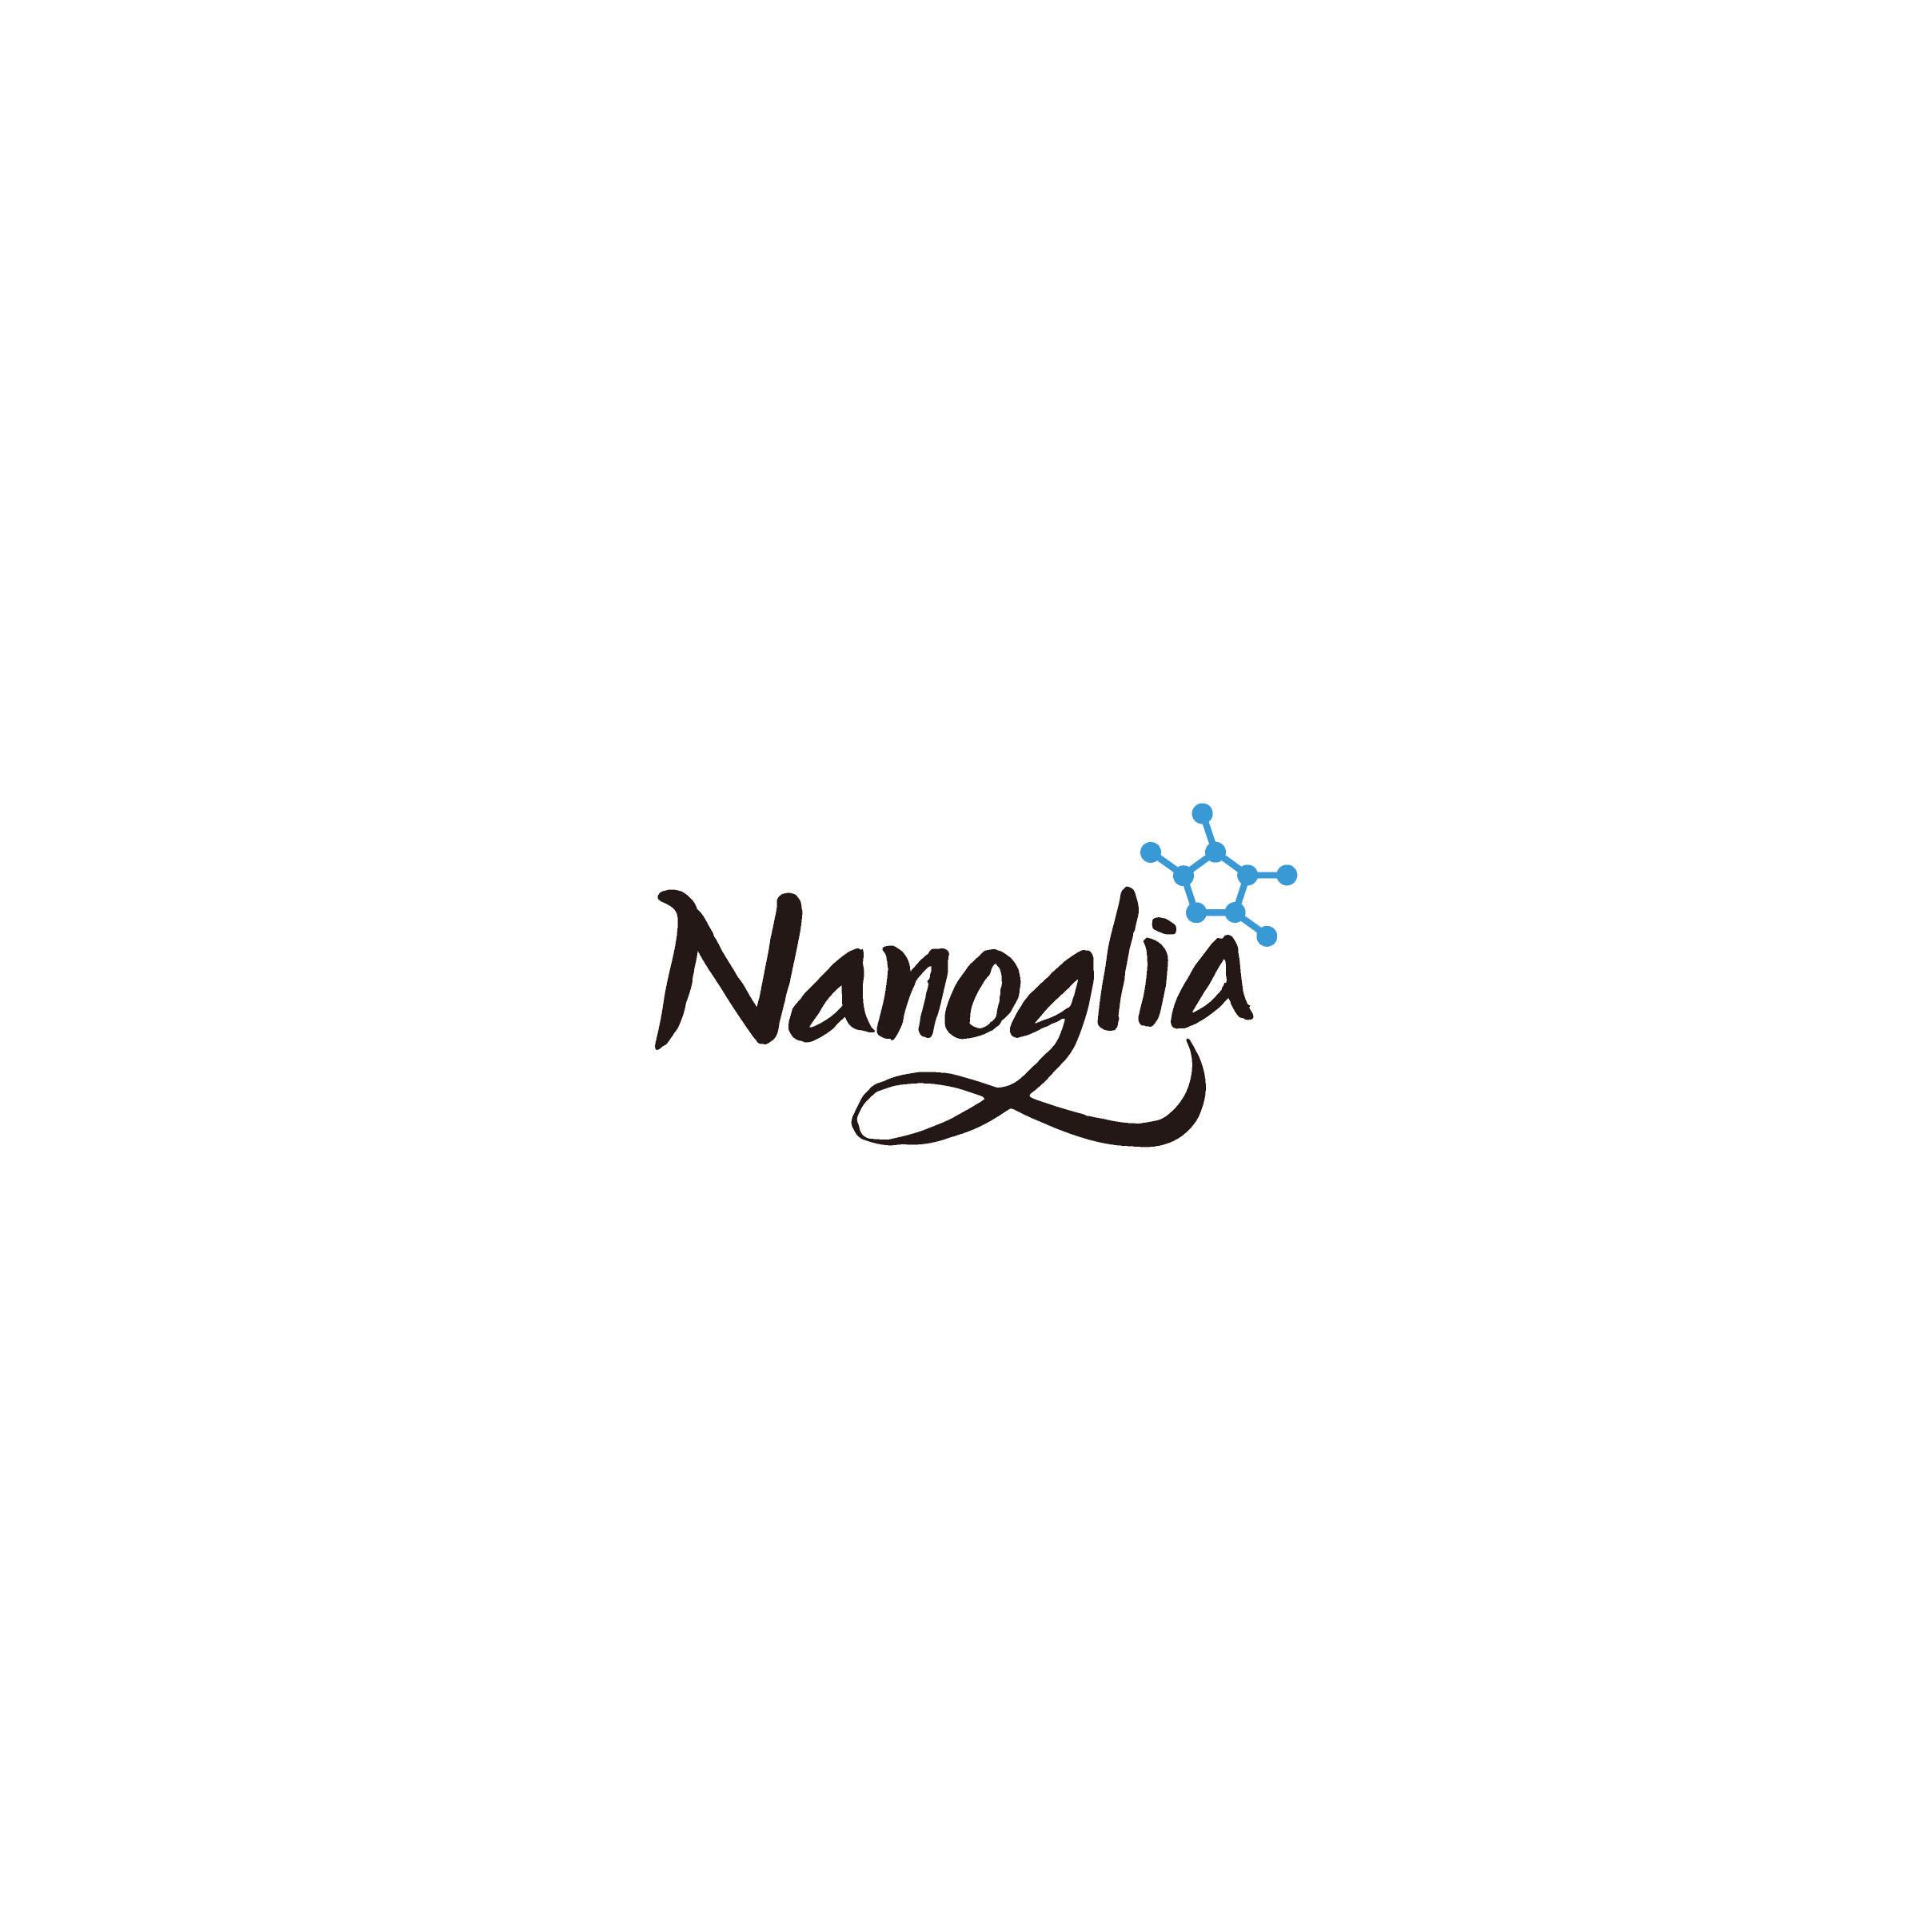 Nanoglia